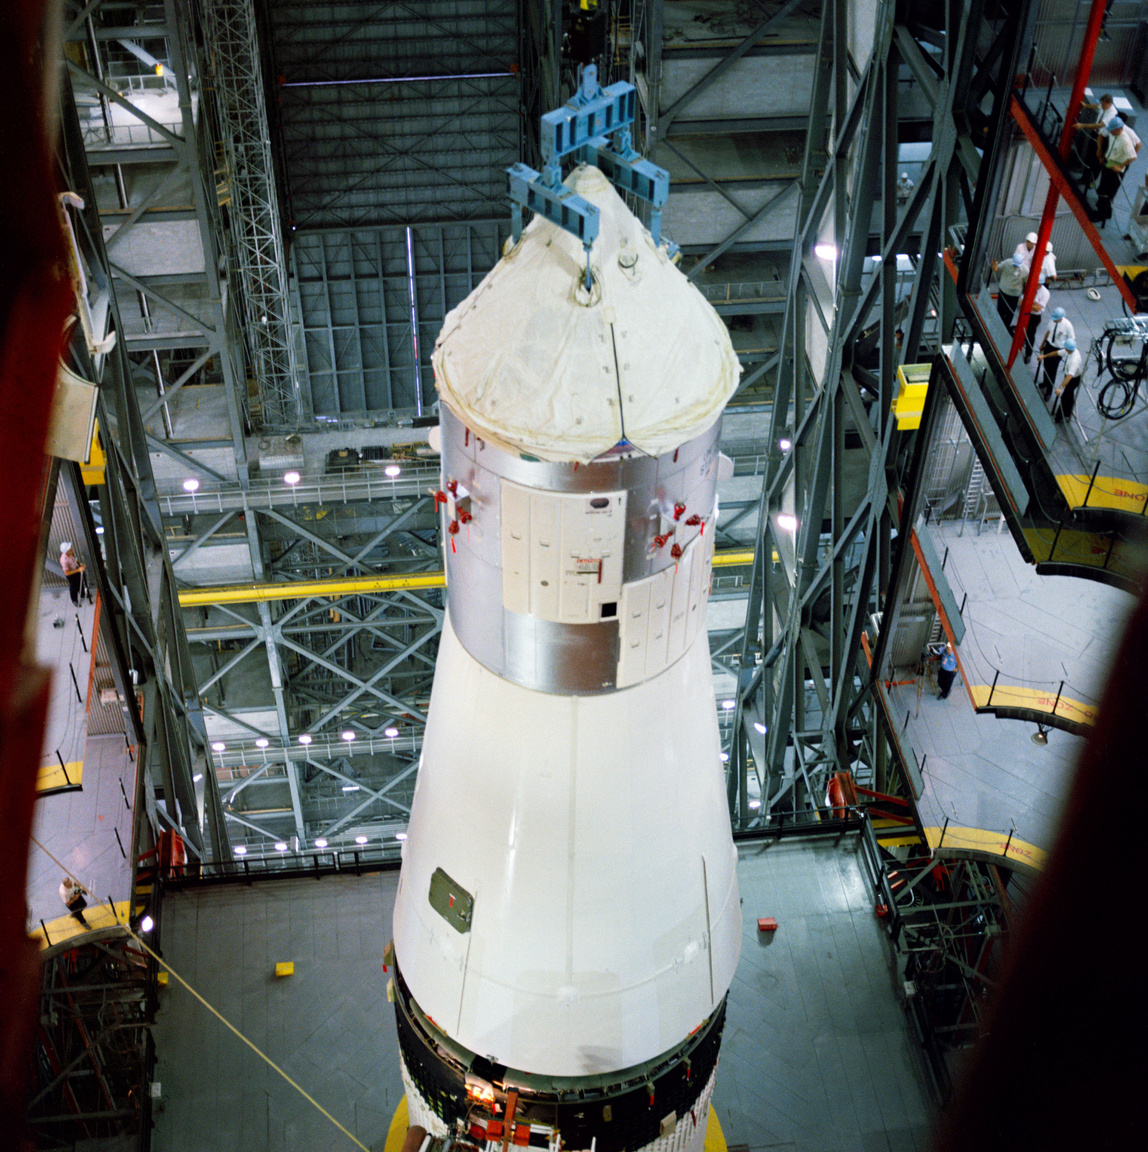 1967. június 20-án a Kennedy űrközpont rakétaösszeszerelő-csarnokában (Vehicle Assembly Building, VAB) helyére került a 017-es számú Apollo űrhajó (Apollo Spacecraft 017 Command Module, CSM 017), amit az Apollo-1 fél évvel korábbi tragédiája után alapos revíziónak vetettek alá. (A vizsgálat csaknem 1500 hibát tárt fel, ezek kijavítása 4 hónapot vett igénybe, jócskán eltolva a start eredetileg tervezett időpontját.)